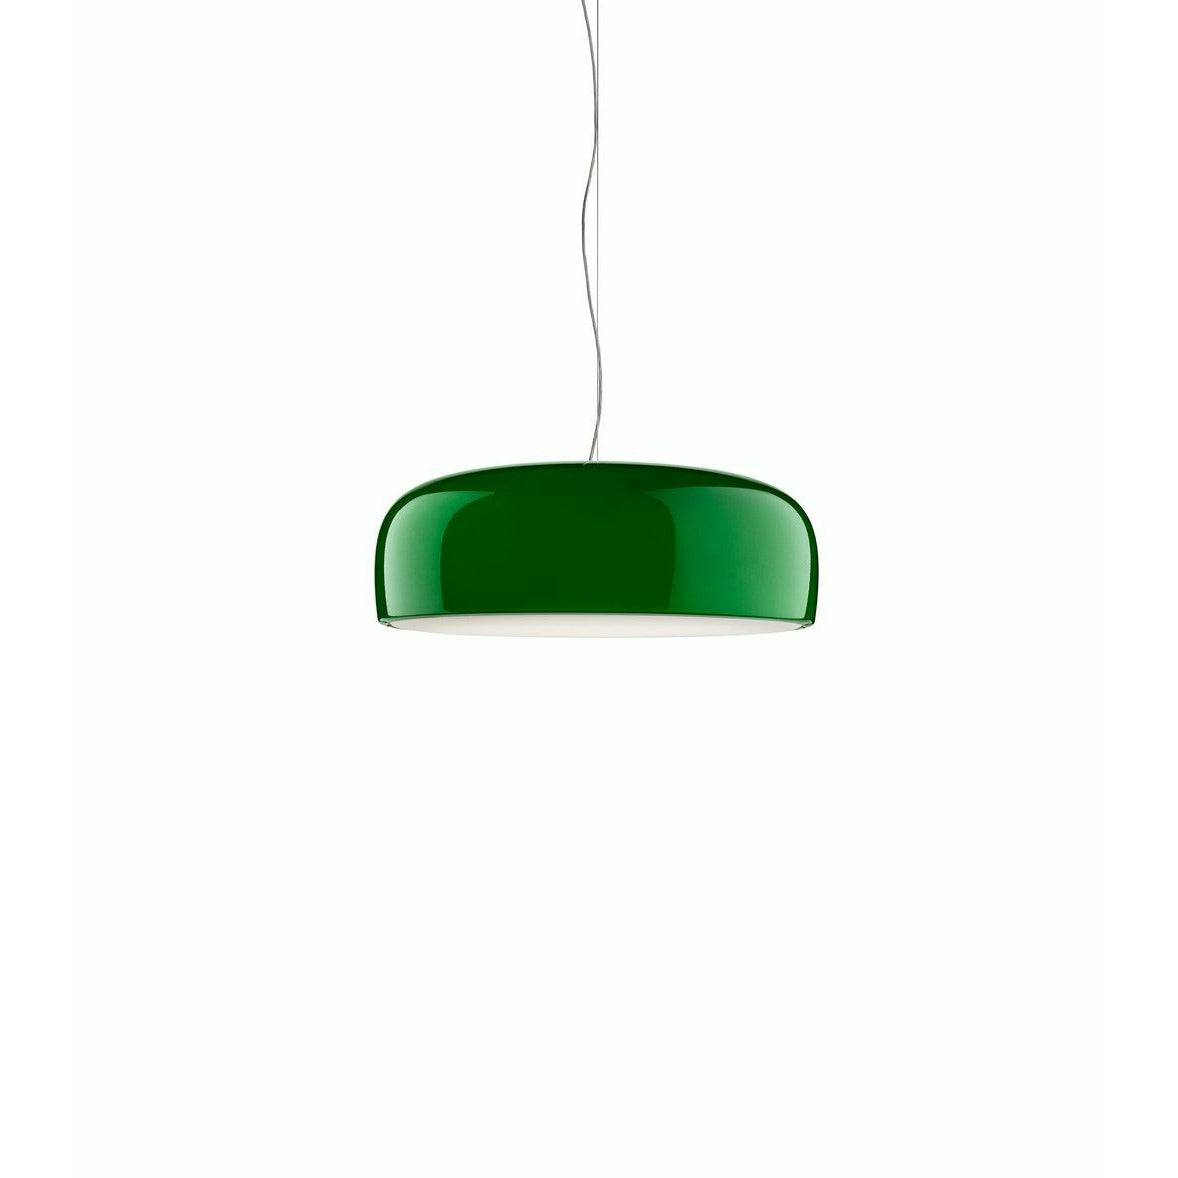 弗洛斯·史密斯菲尔德的吊灯，绿色